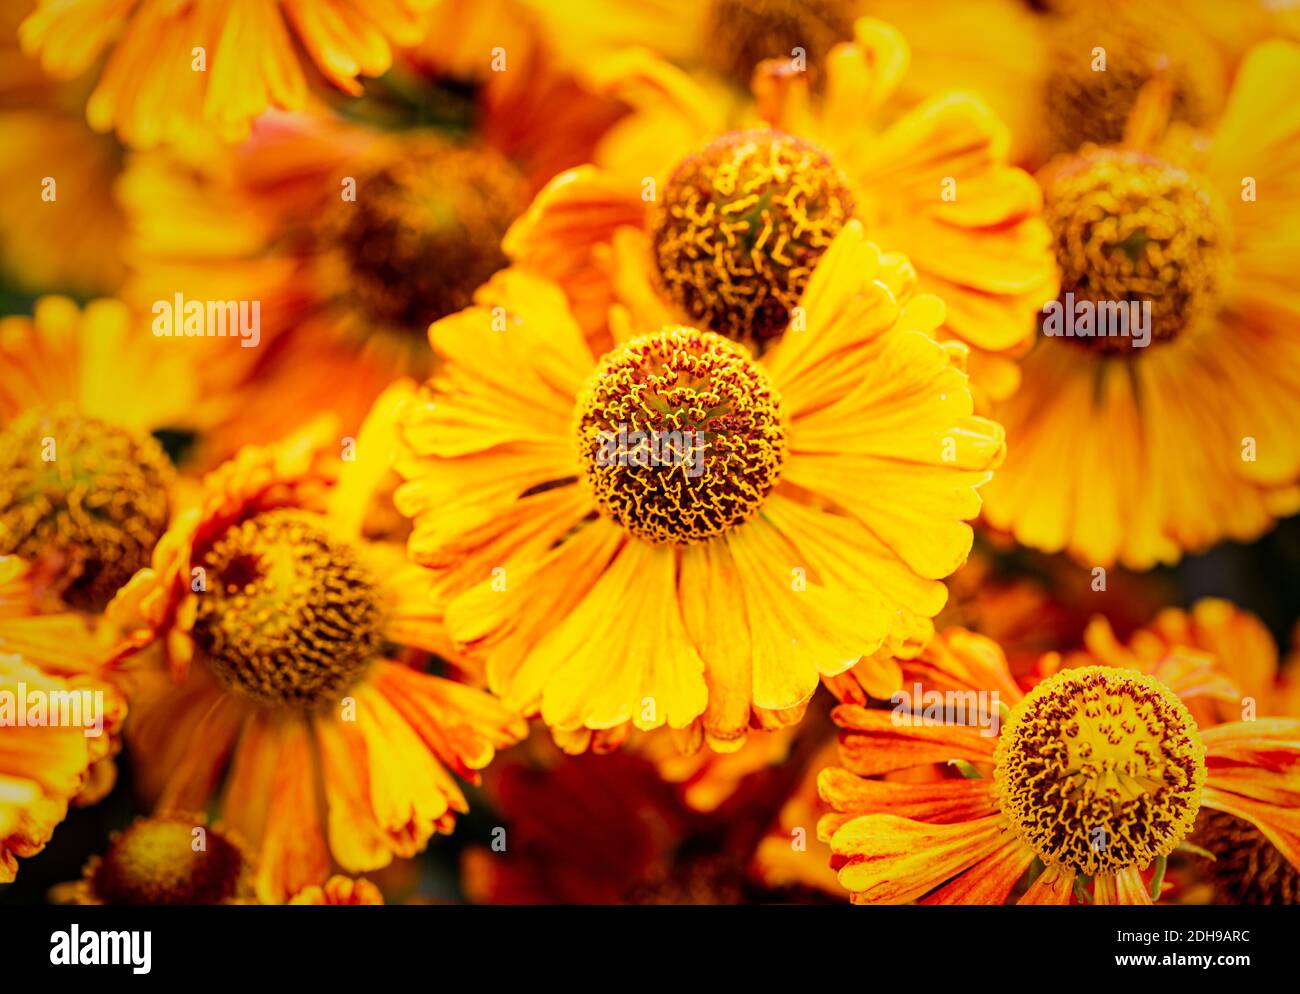 Sneezeweed, Common sneezeweed, Helenium 'Moerheim Beauty', Orange coloured flower growing outdoor with petals and stamen visible. Stock Photo